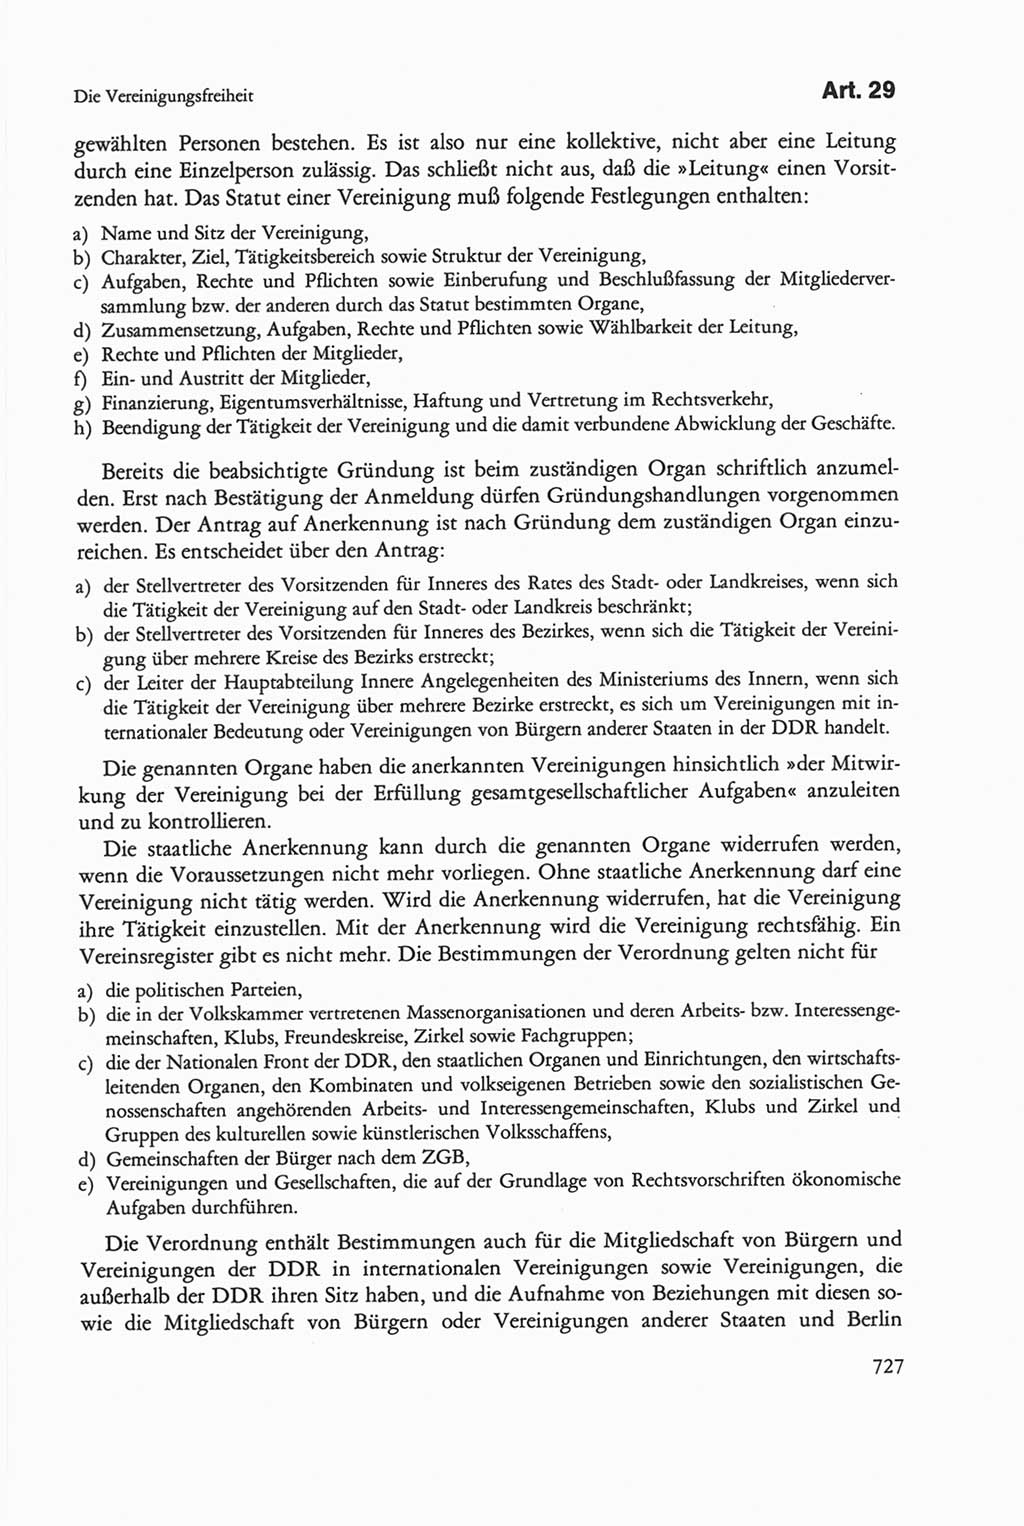 Die sozialistische Verfassung der Deutschen Demokratischen Republik (DDR), Kommentar 1982, Seite 727 (Soz. Verf. DDR Komm. 1982, S. 727)